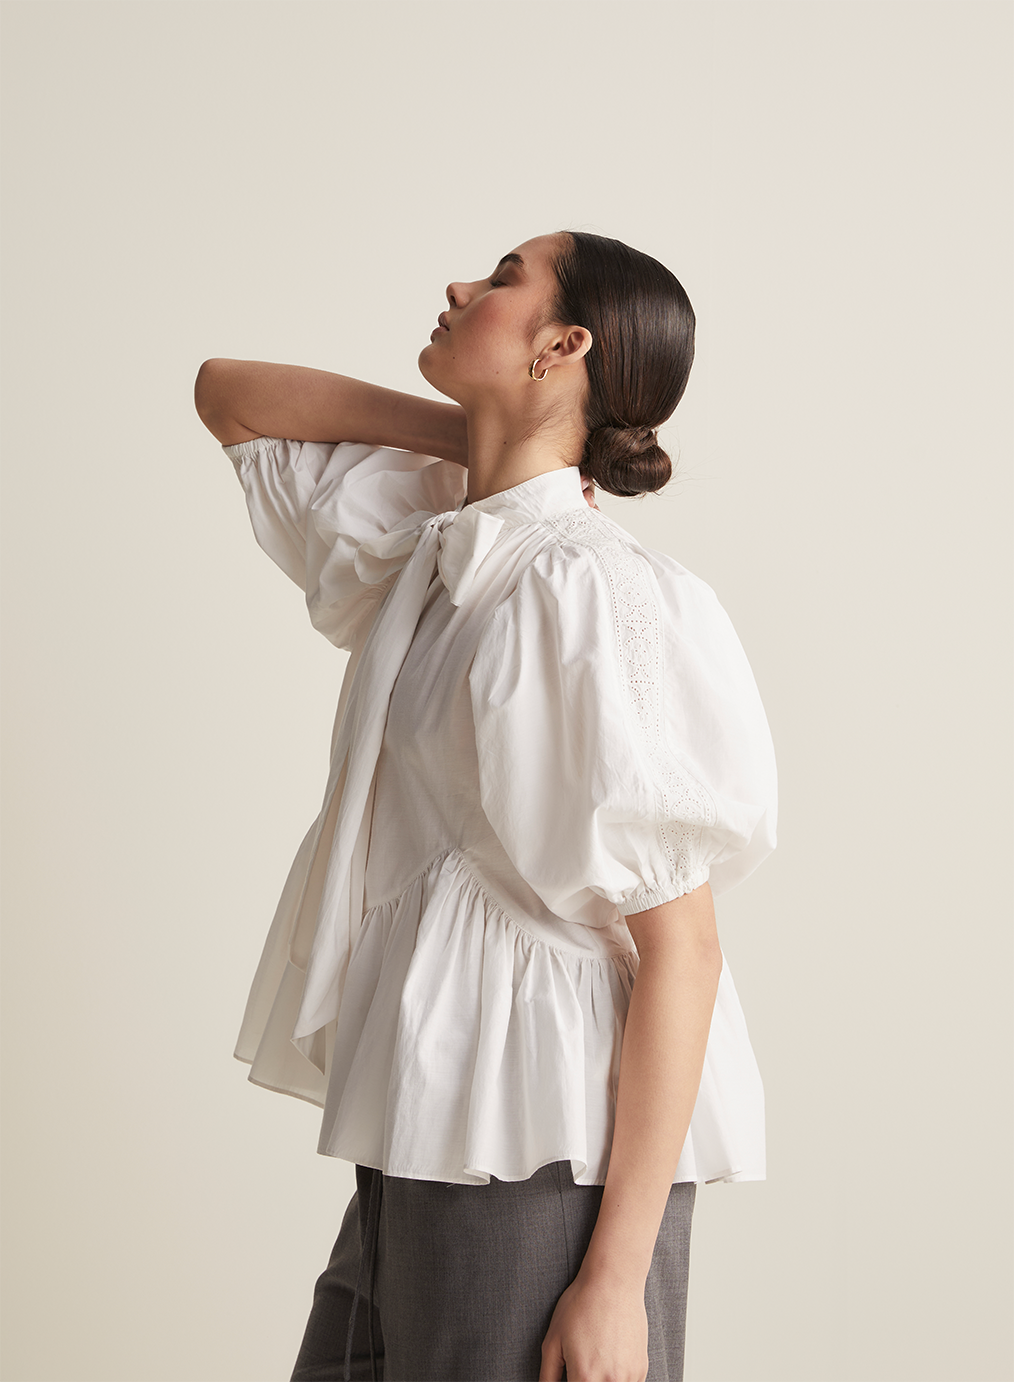 Agatha Silk Cotton Shirt | Off White